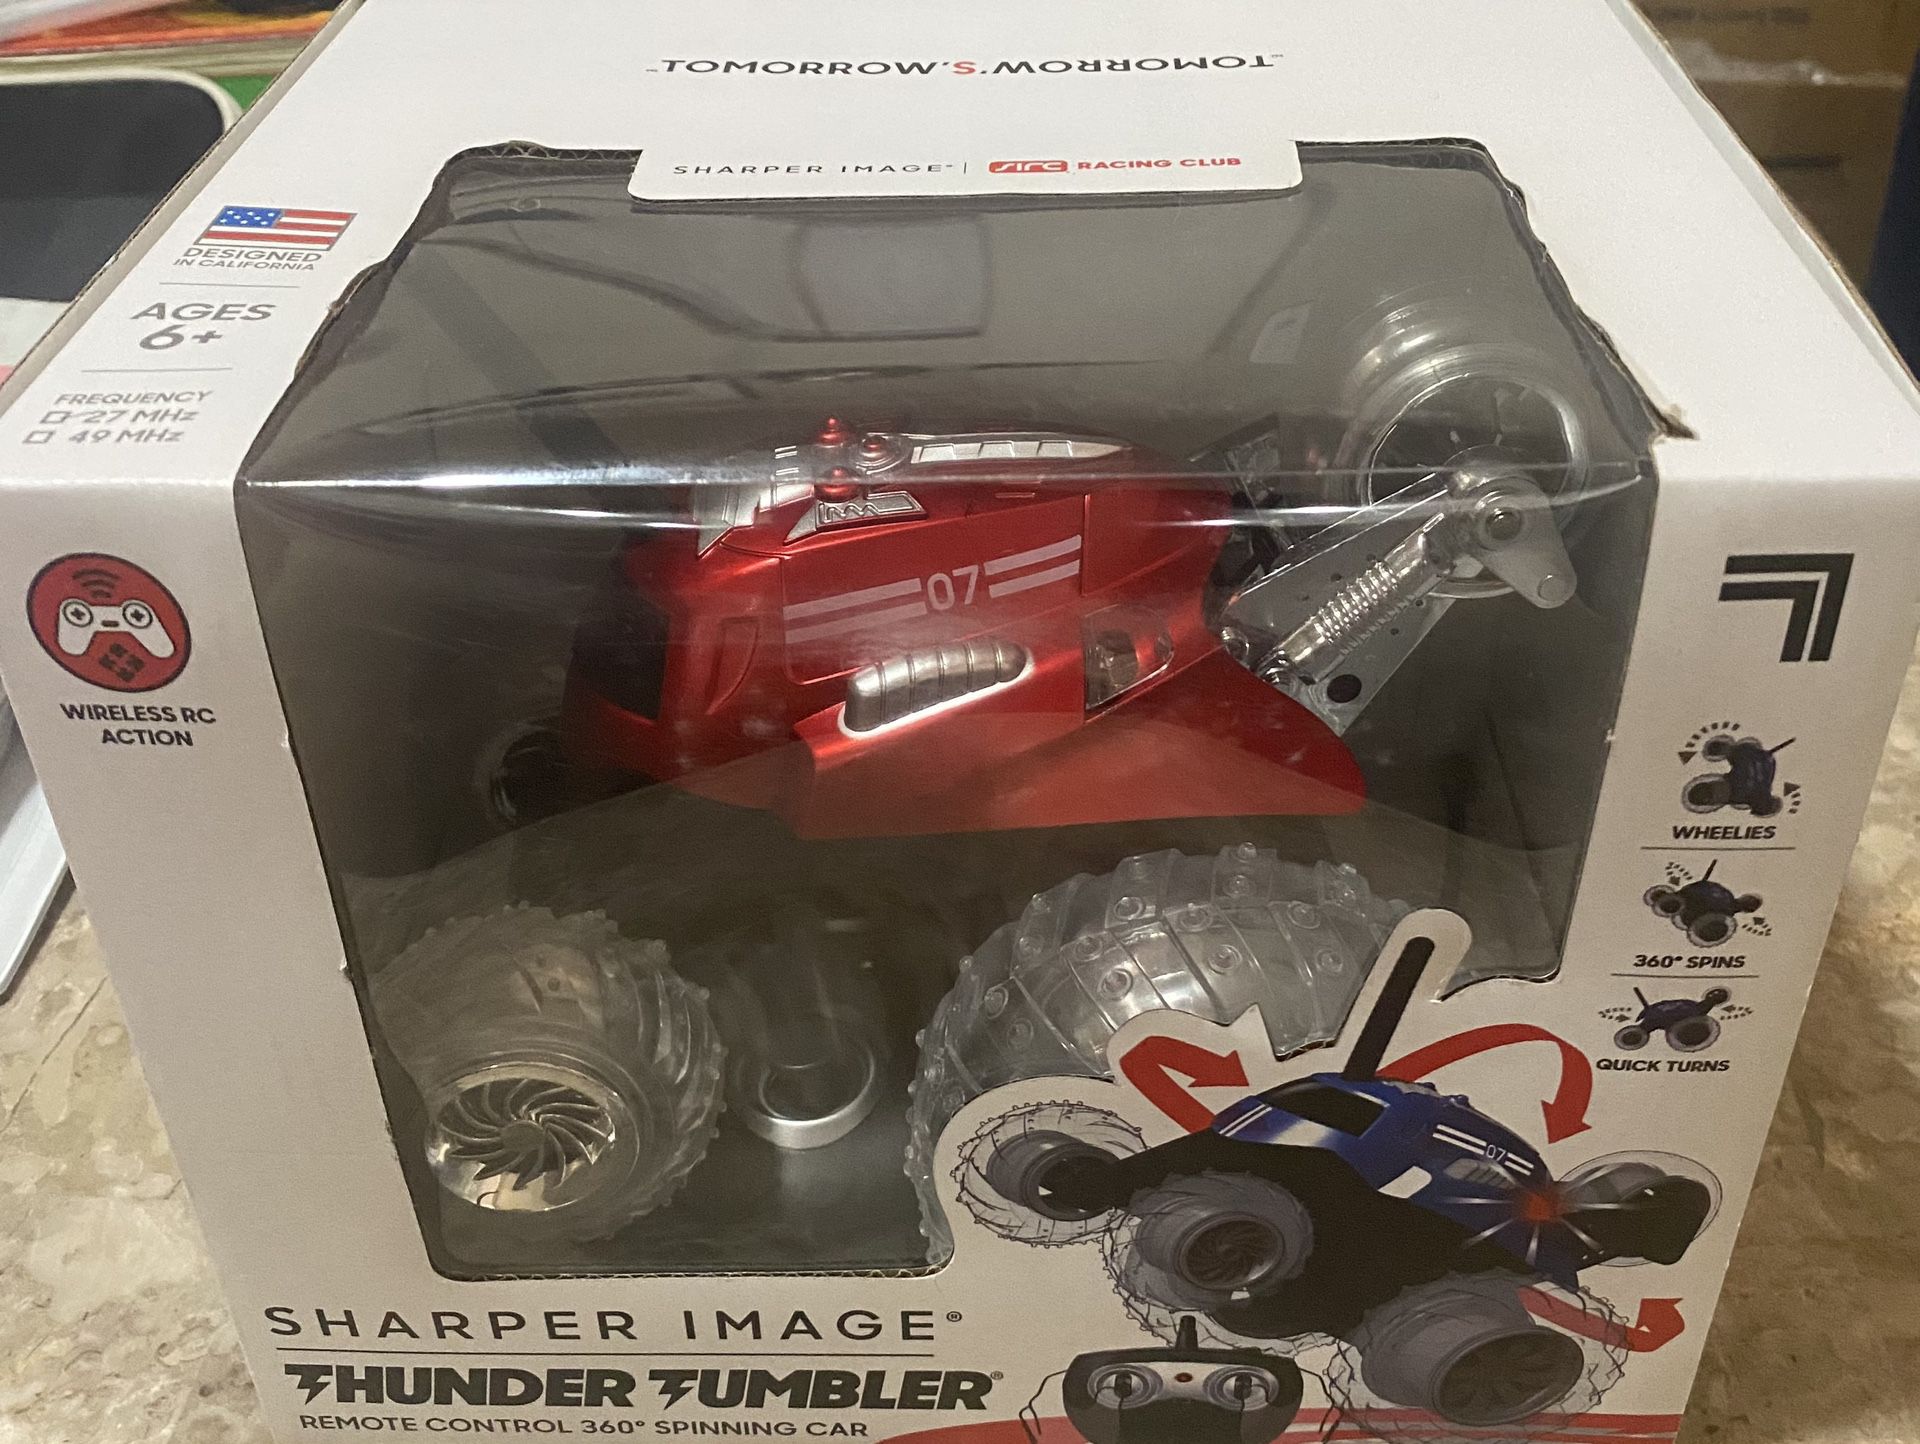 Thunder Tumbler Children’s Race Car